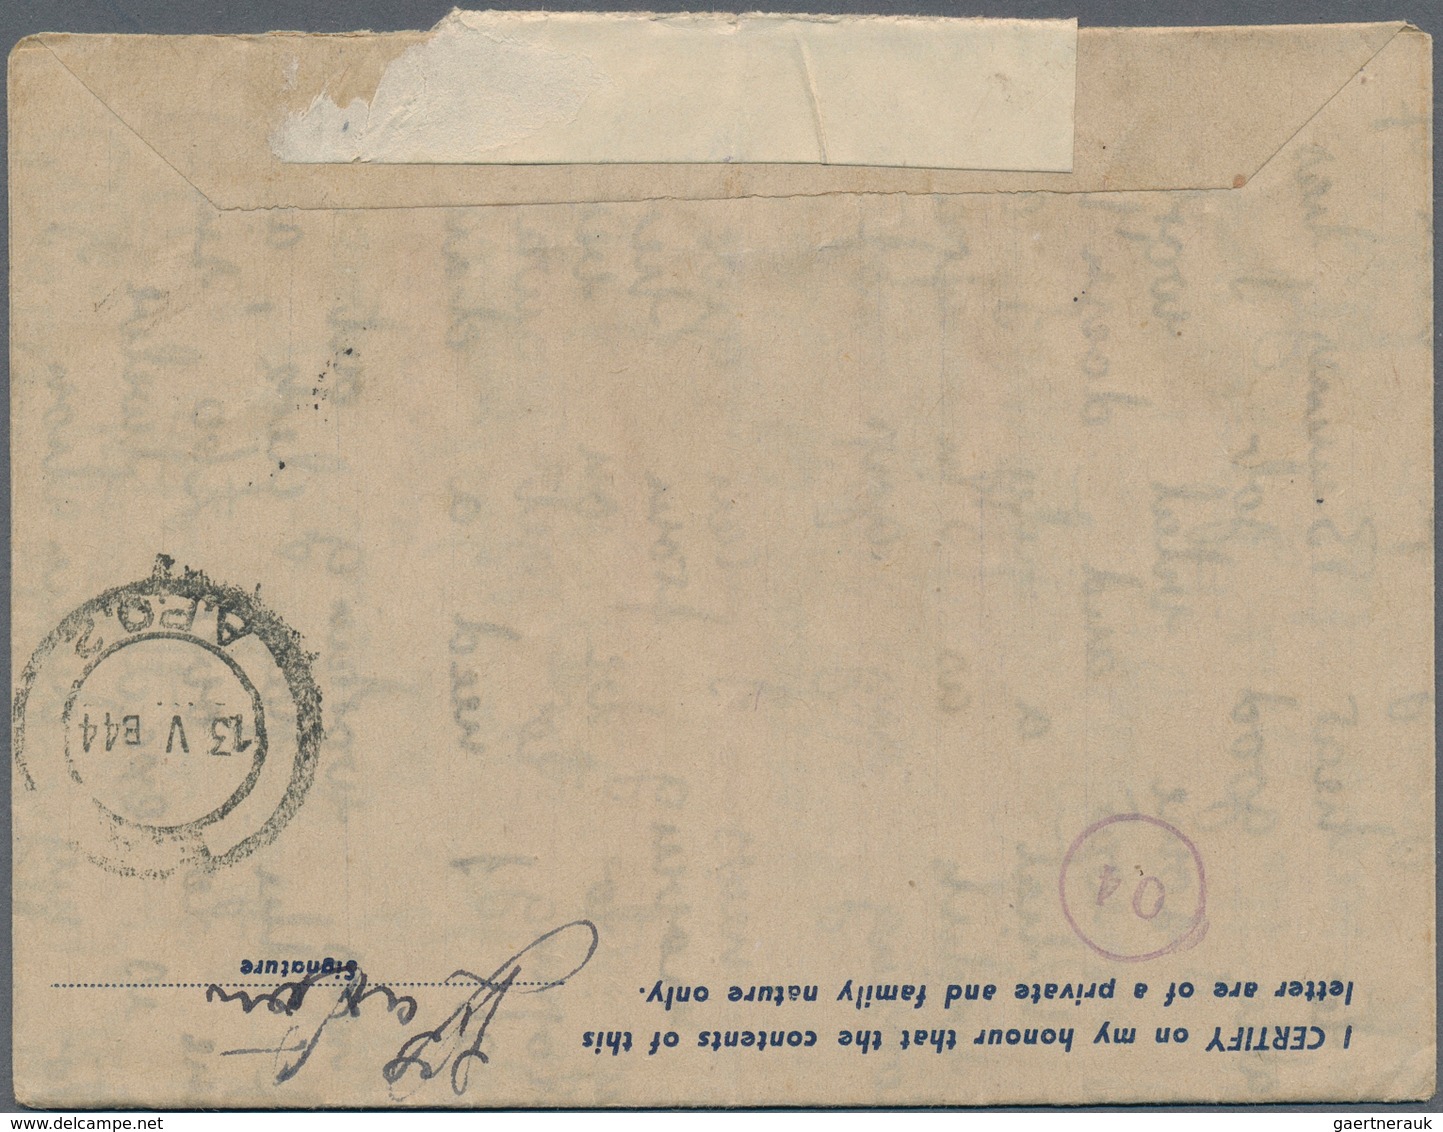 Ostafrikanische Gemeinschaft: 1944, Air Mail Letter cards with blue value tablet "25 CENTS / N 4", a